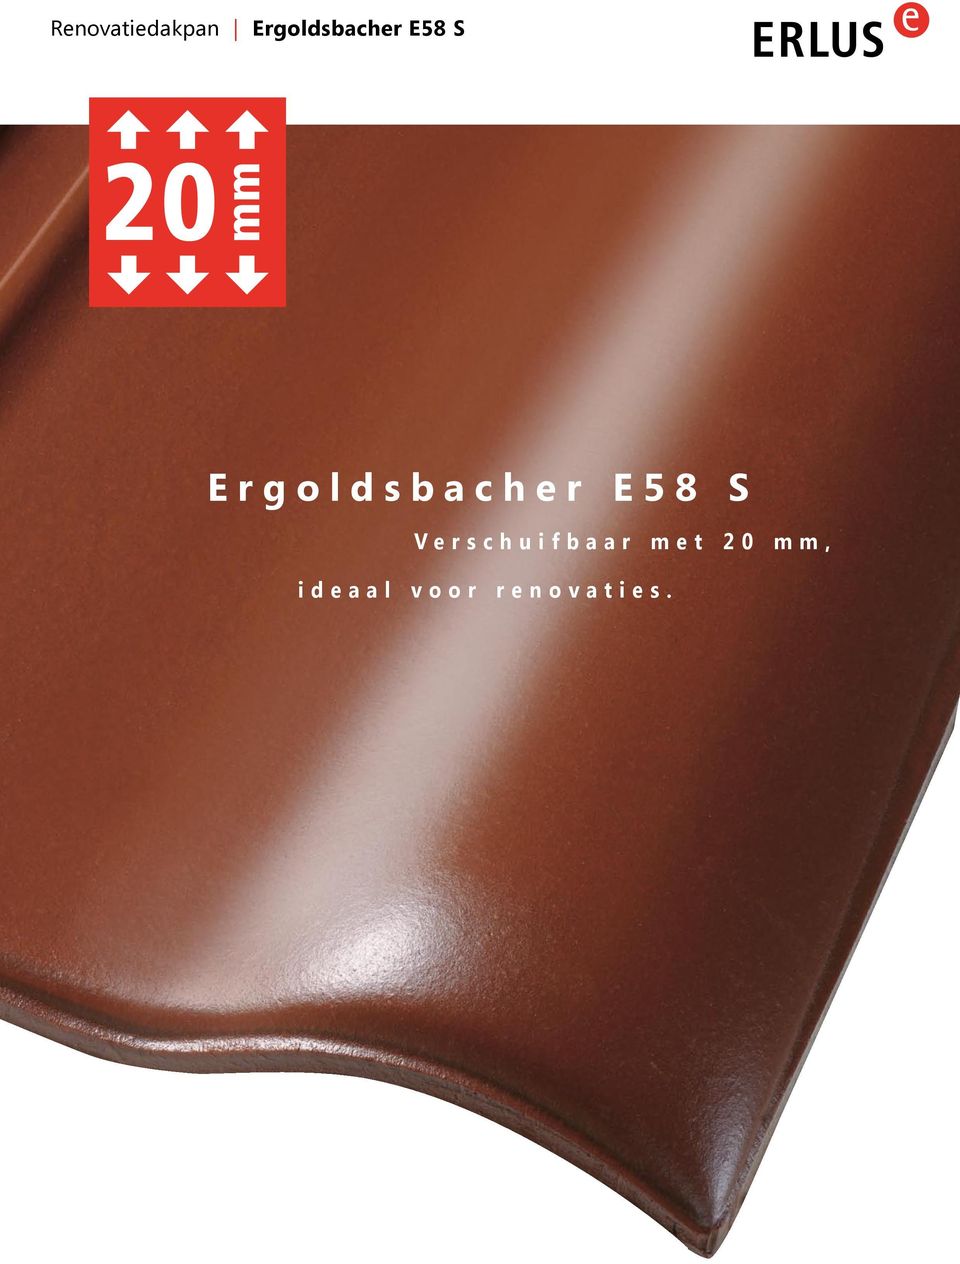 Ergoldsbacher E58 S